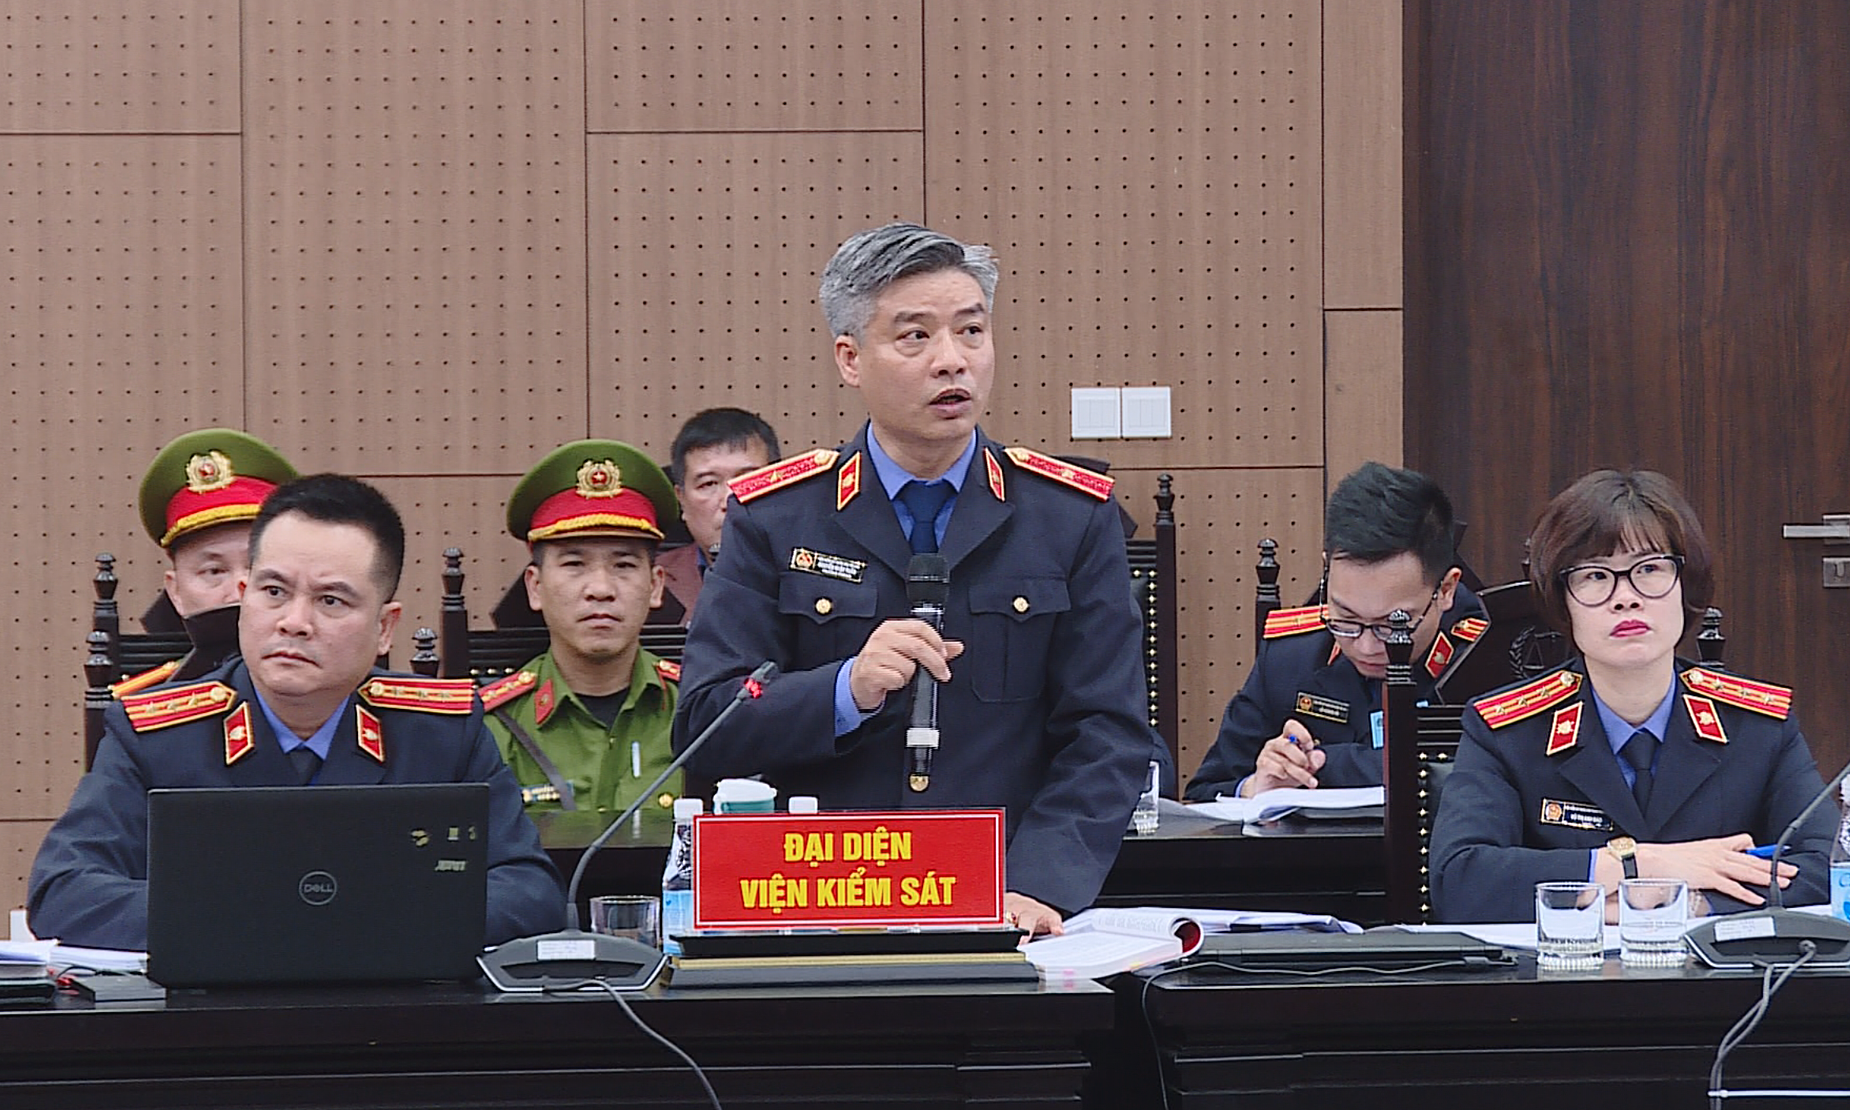 Chủ tịch Tân Hoàng Minh được VKS đề nghị giảm thêm một năm tù